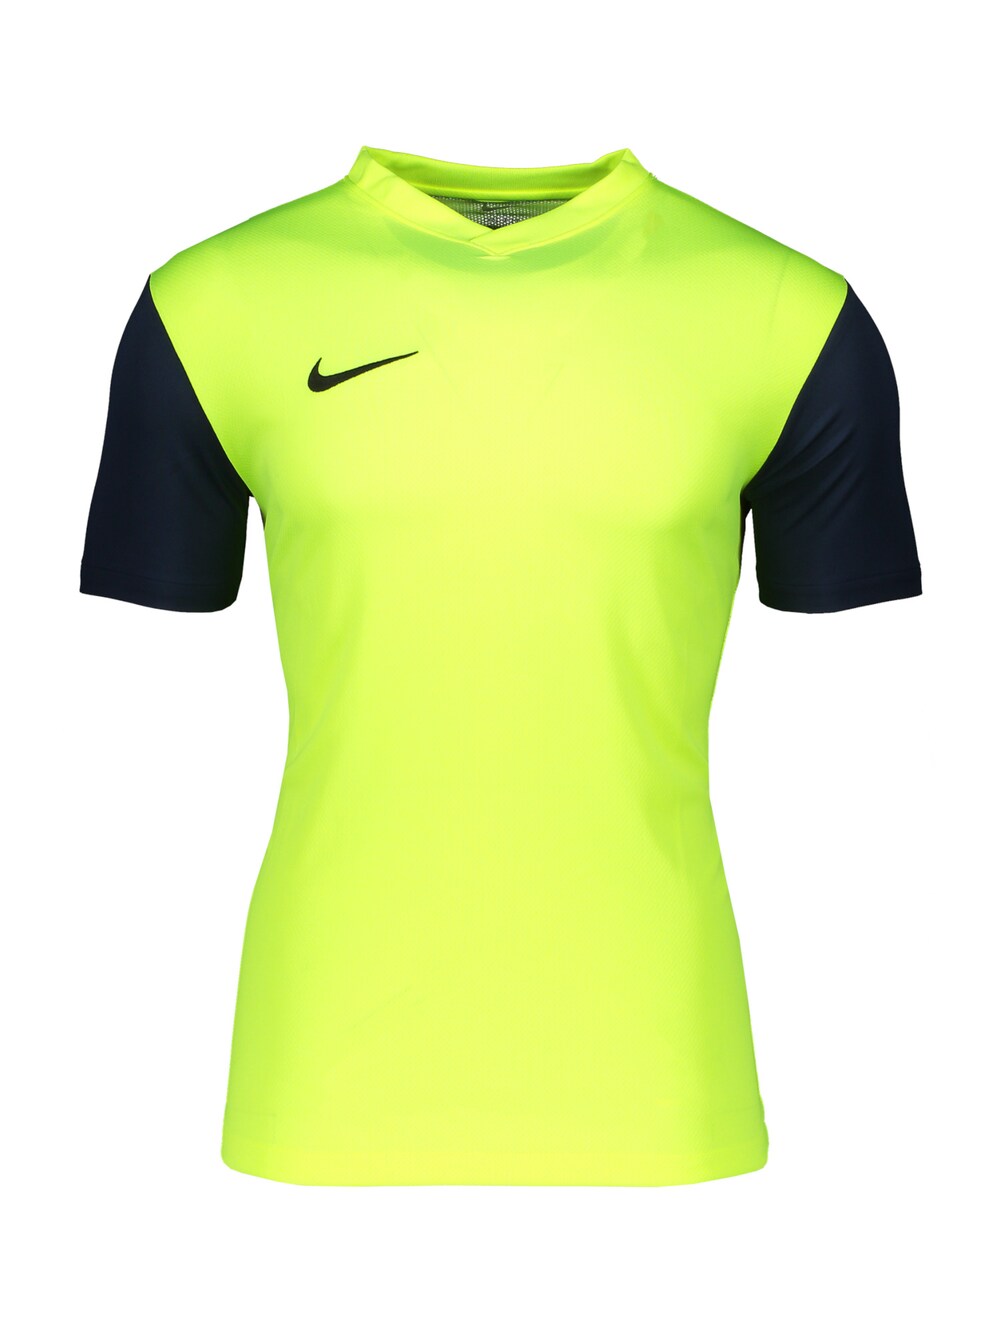 Джерси Nike Tiempo Premier II, неоново-желтый